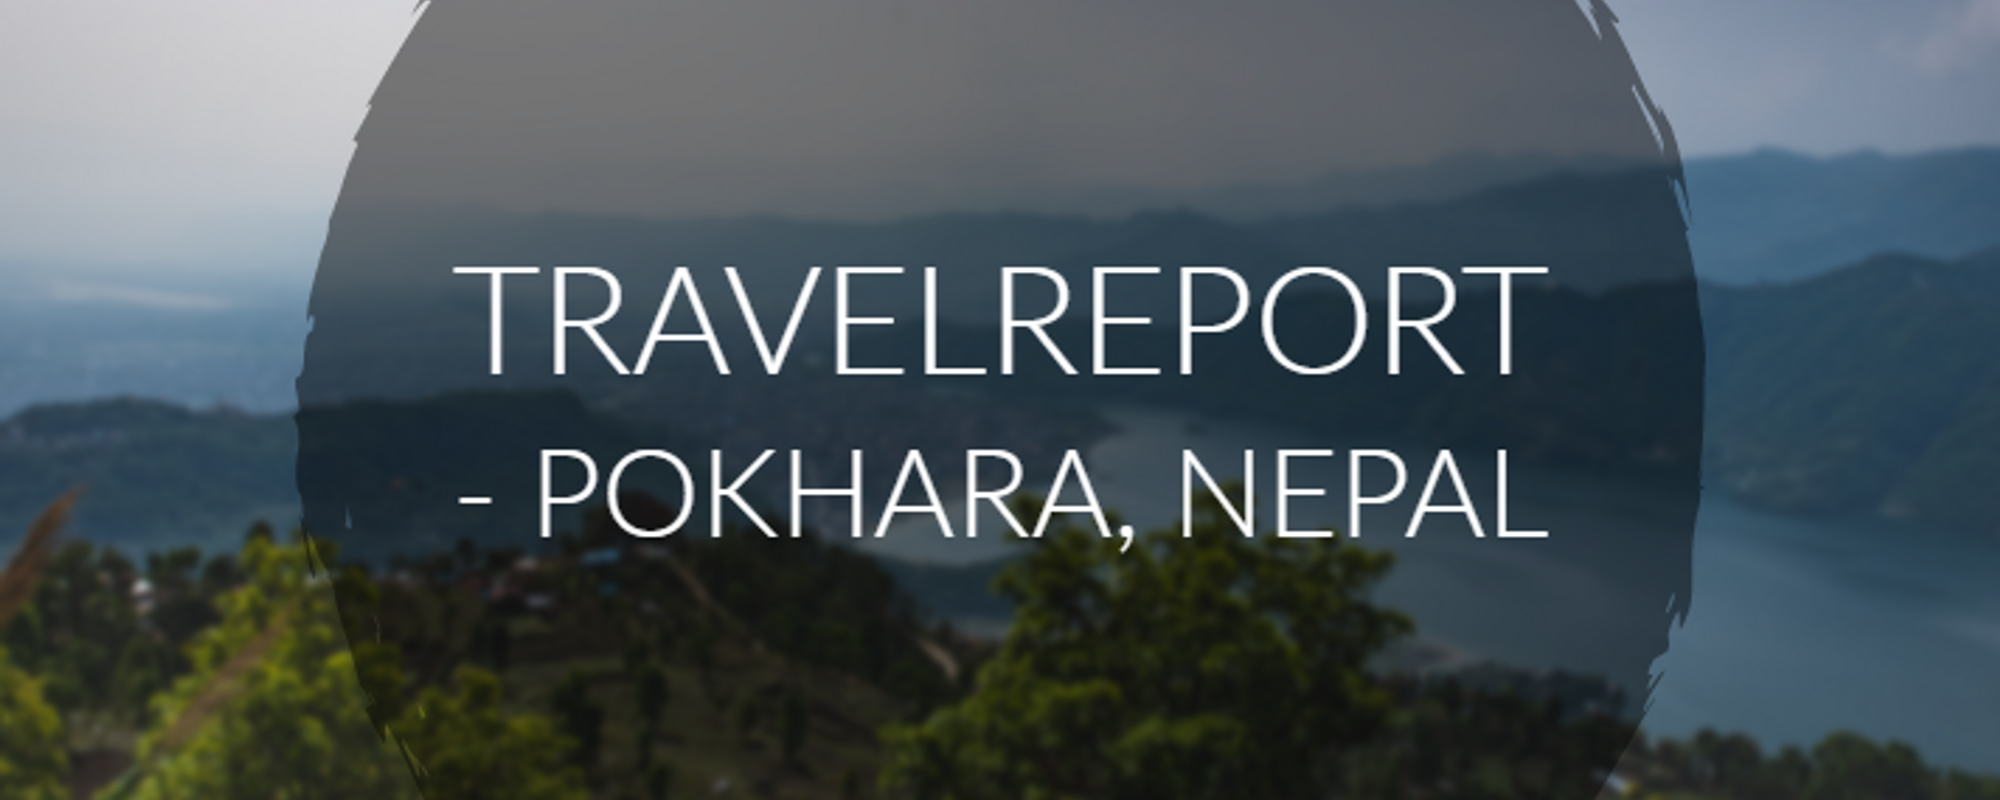 Pokhara, Nepal - Travelreport